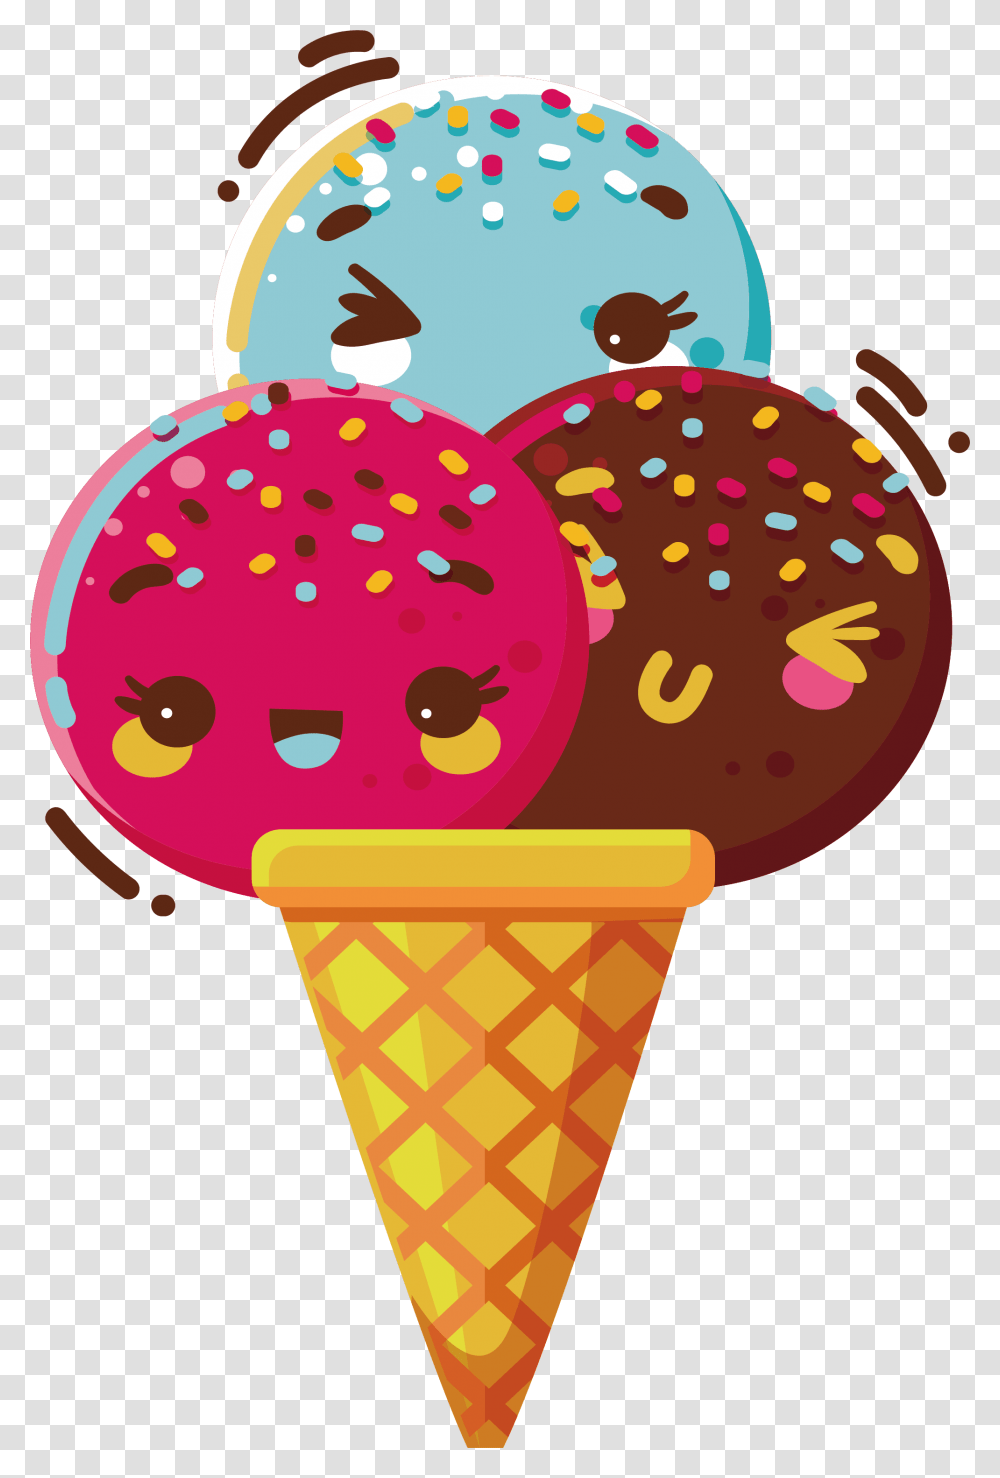 Ice Cream Cone Chocolate Ice Cream Cone, Dessert, Food, Creme, Sweets Transparent Png